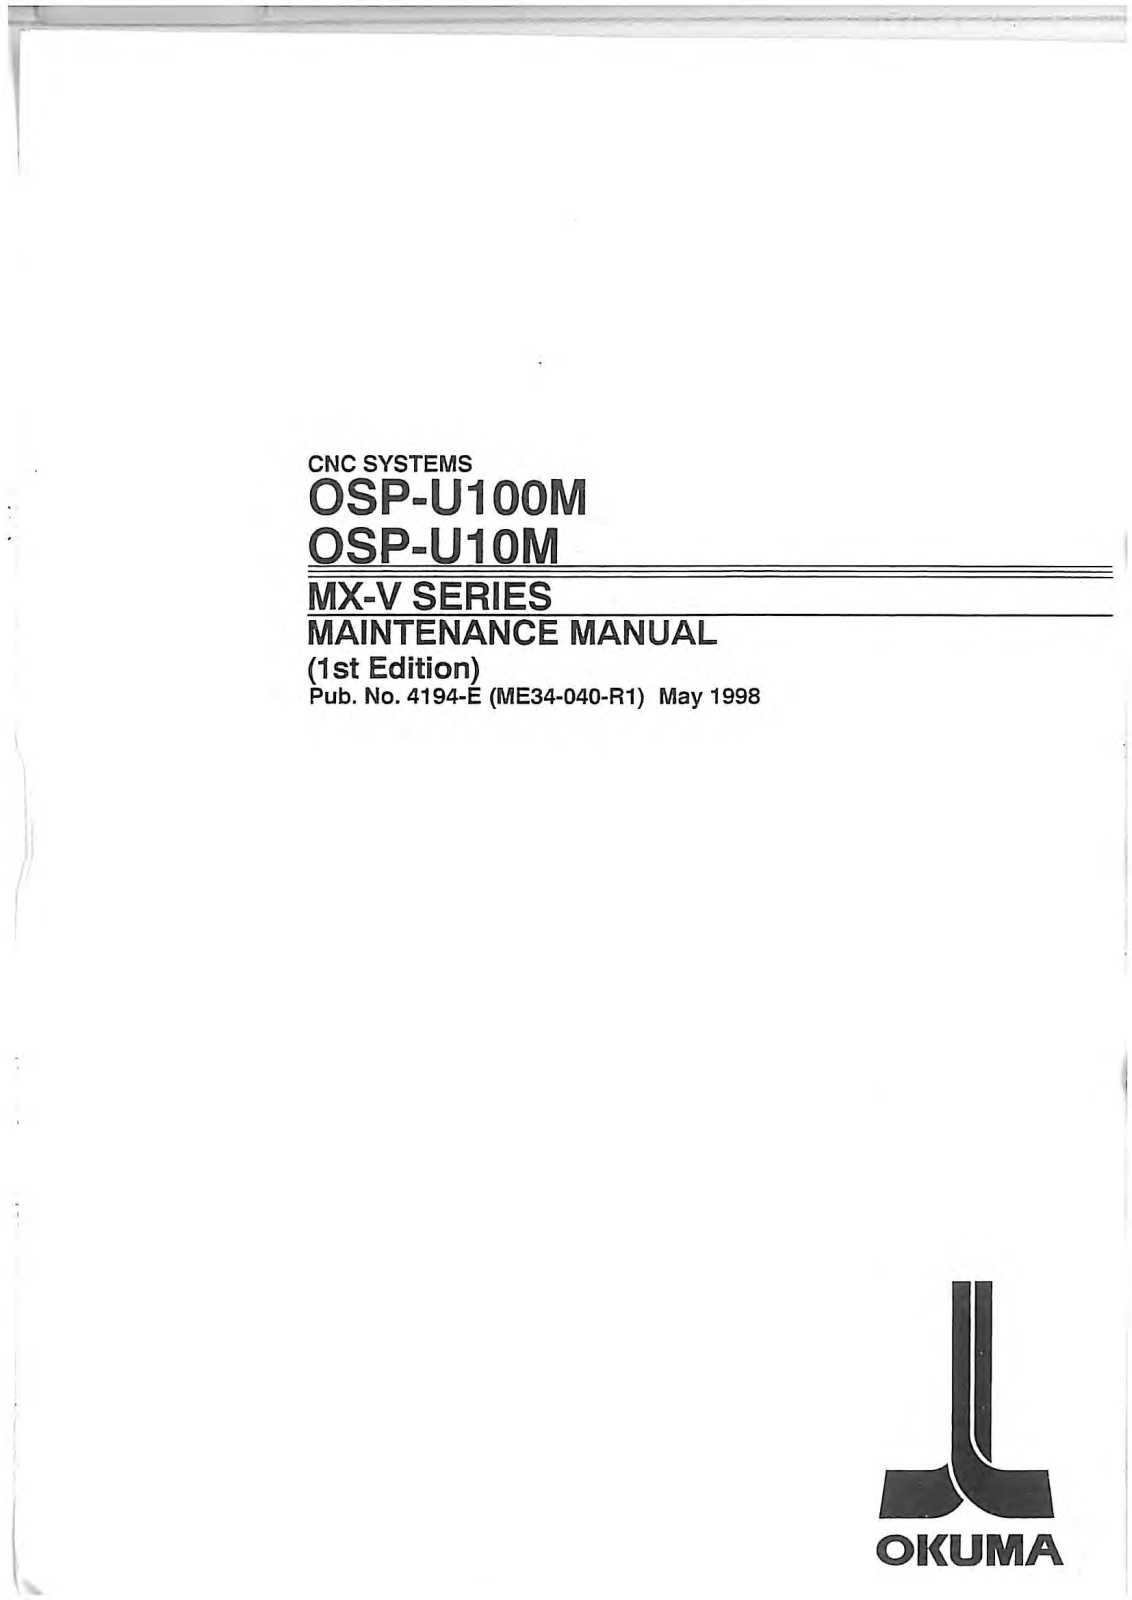 okuma OSP-U100M, OSP-U10M Maintenance Manual